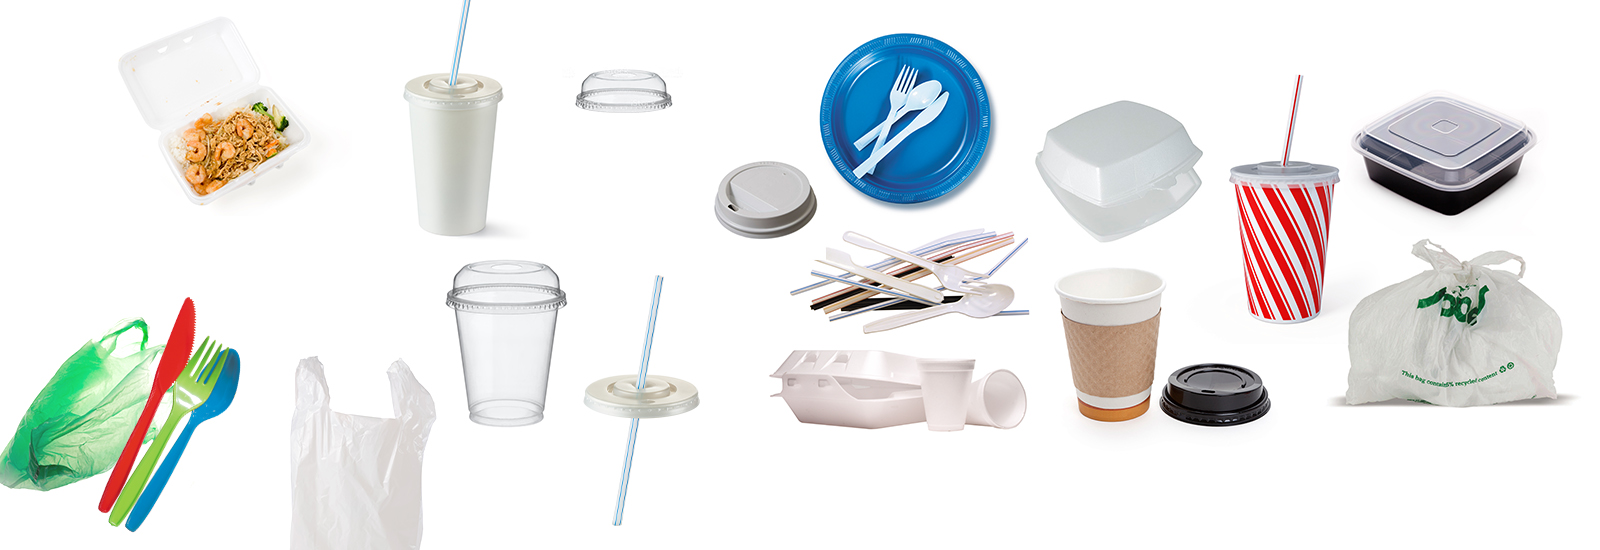 A partir del 2021 quedan totalmente prohibidos en Canadá los recipientes plásticos de un solo uso 